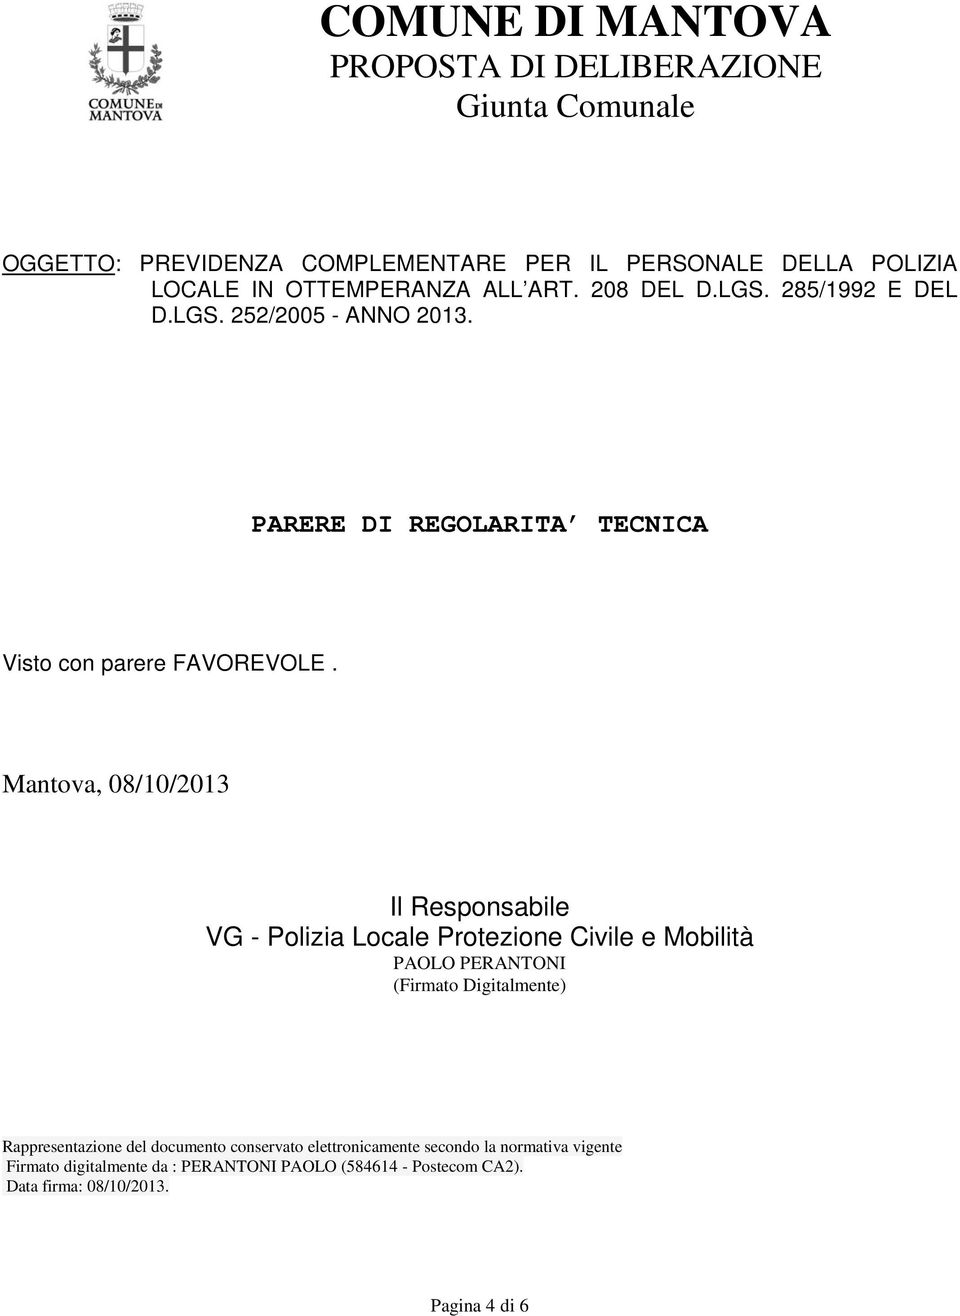 Mantova, 08/10/2013 Il Responsabile VG - Polizia Locale Protezione Civile e Mobilità PAOLO PERANTONI (Firmato Digitalmente) Rappresentazione del